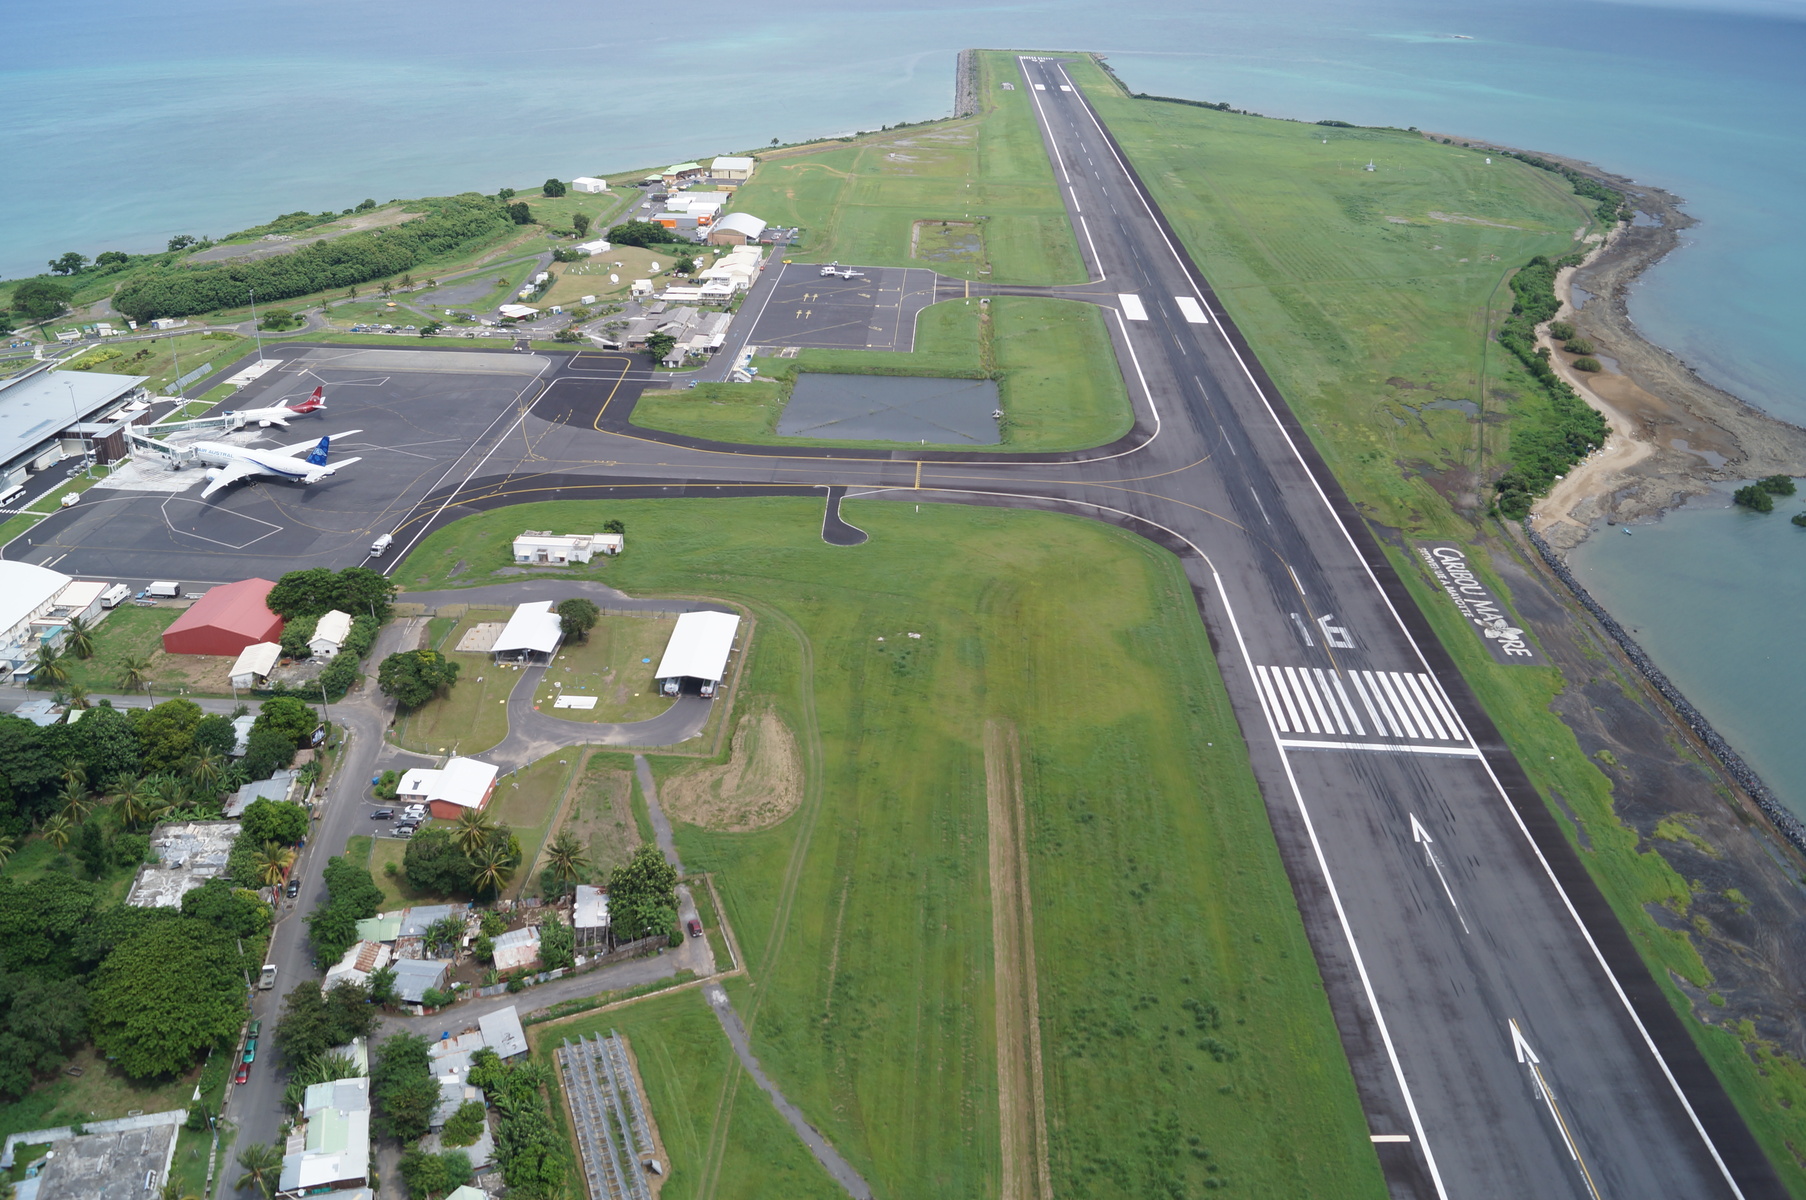 Desserte aérienne à Mayotte : 13 millions d’euros récoltés pour la mise aux normes de l’aéroport